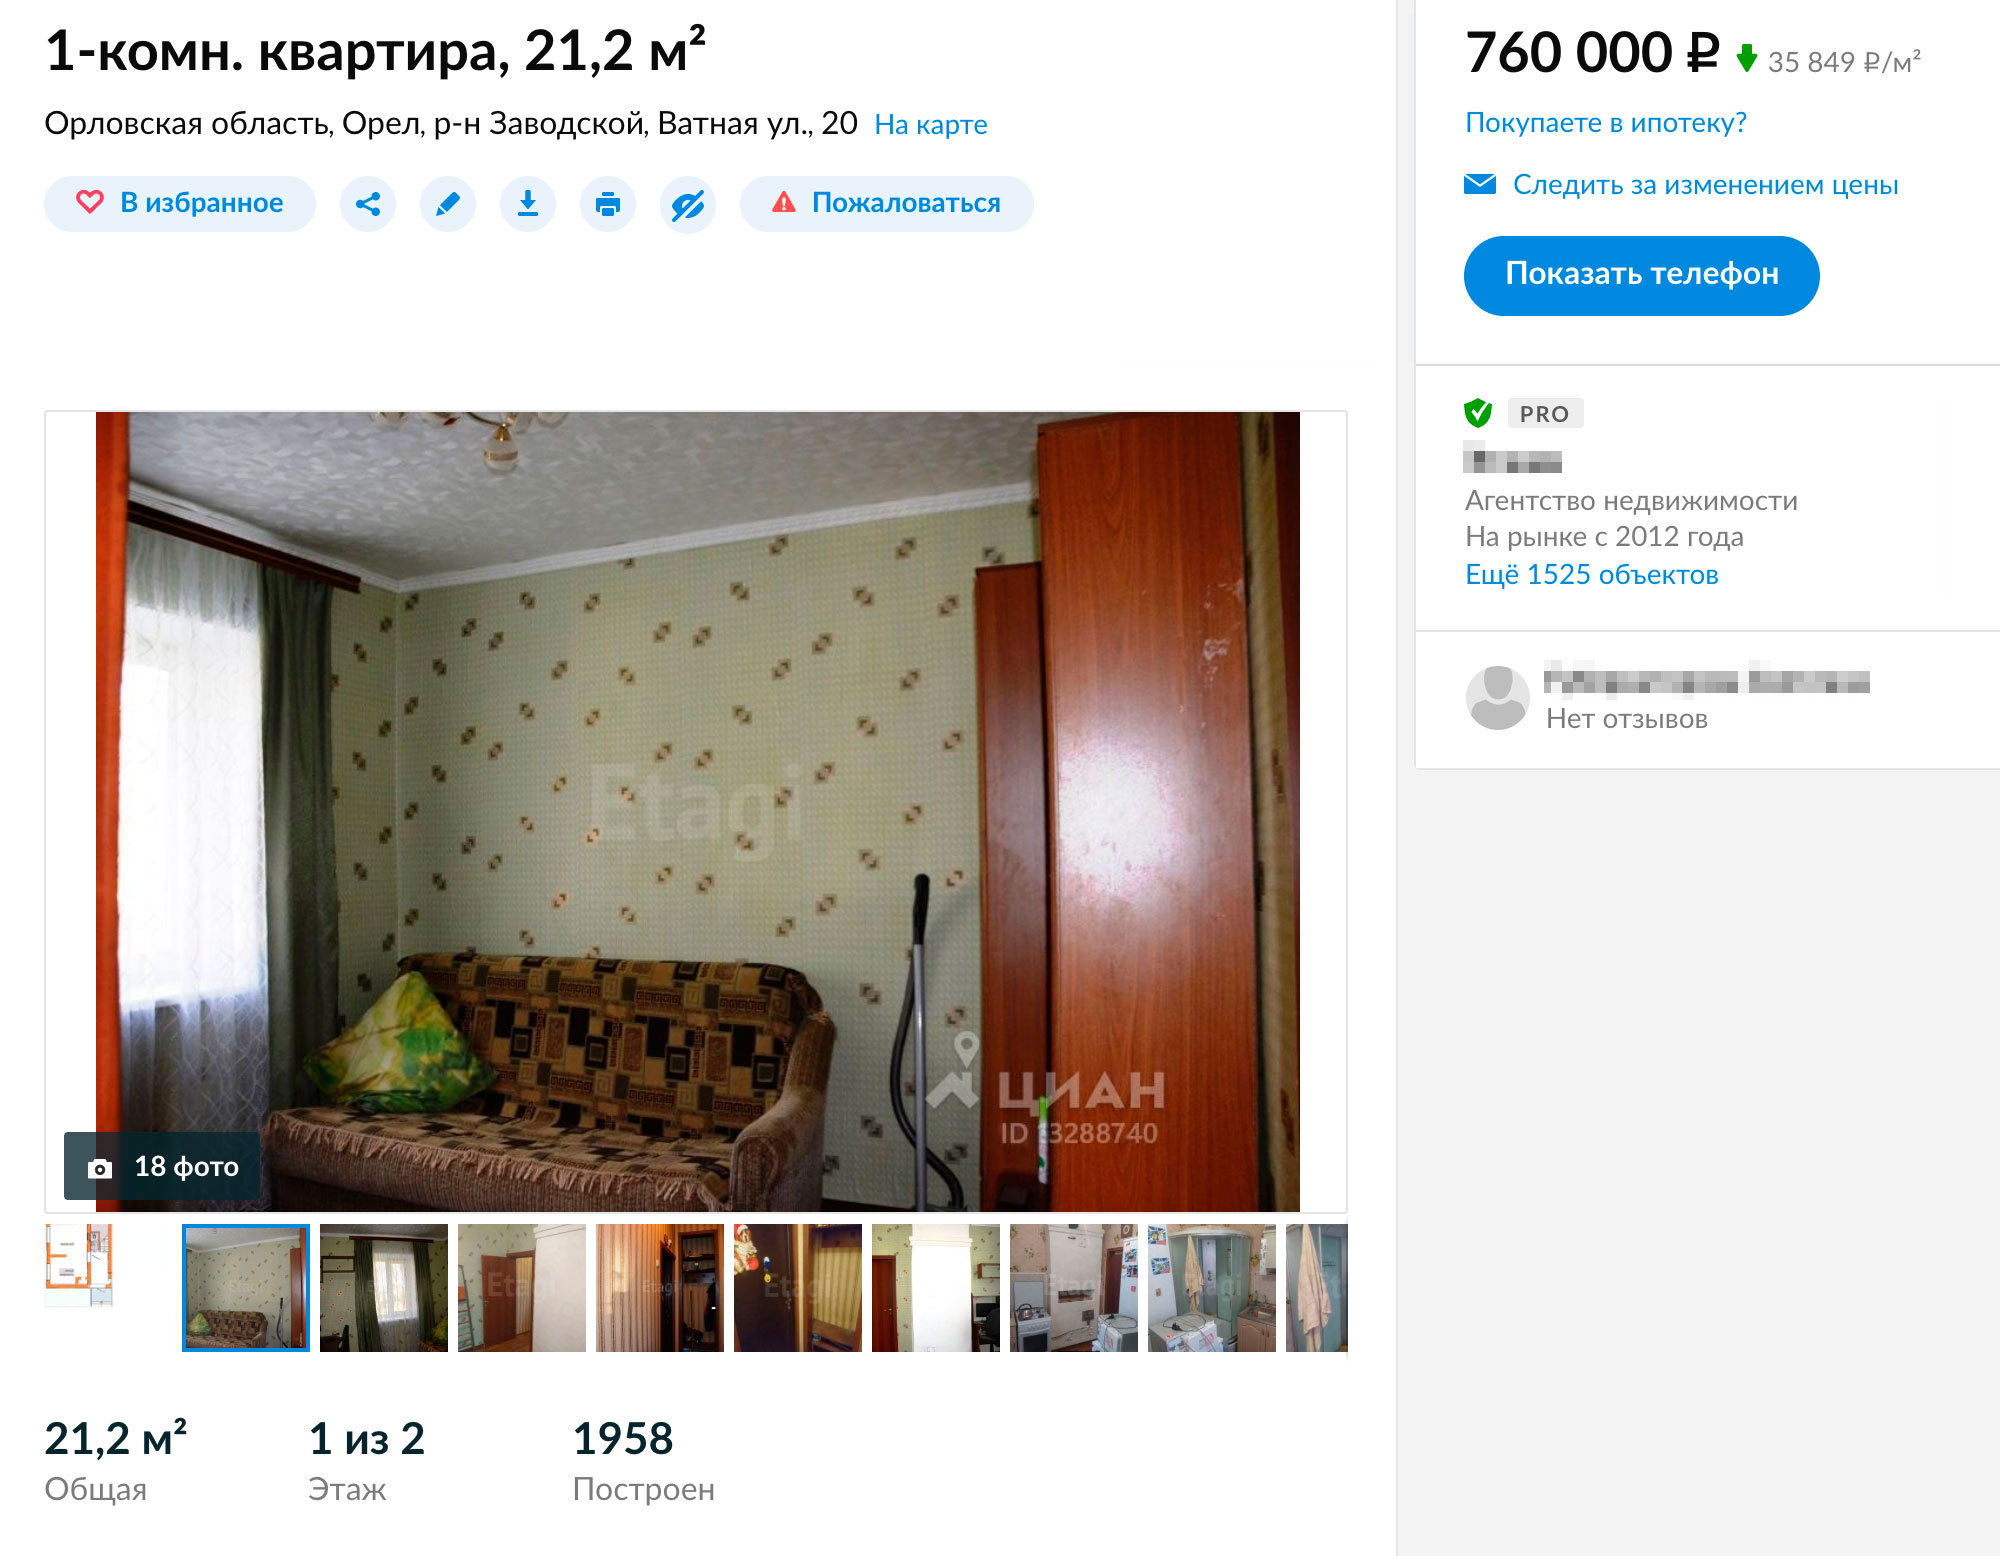 На окраине города — в районе Карачевского шоссе — много вариантов дешевого жилья в старых двухэтажках. Однокомнатную квартиру здесь можно купить за 760 тысяч рублей